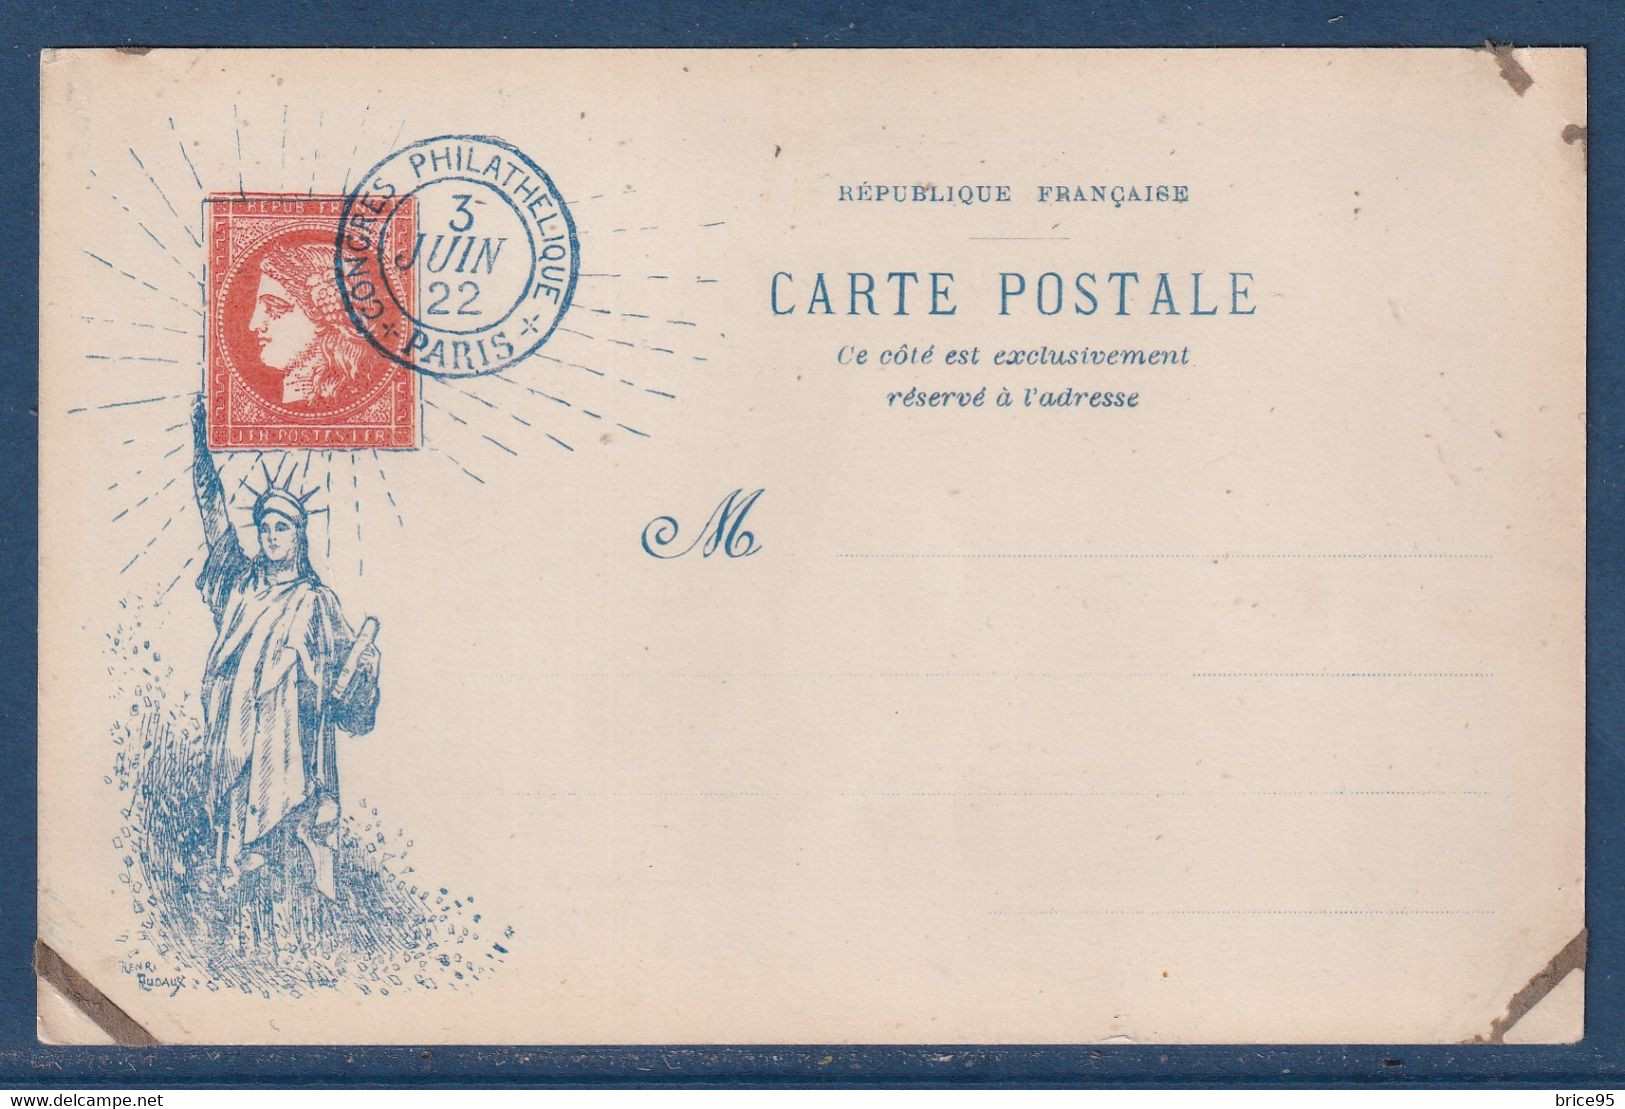 France - Carte Postale - CPA - Congrès Philatélique - Paris - 1922 - Bourses & Salons De Collections